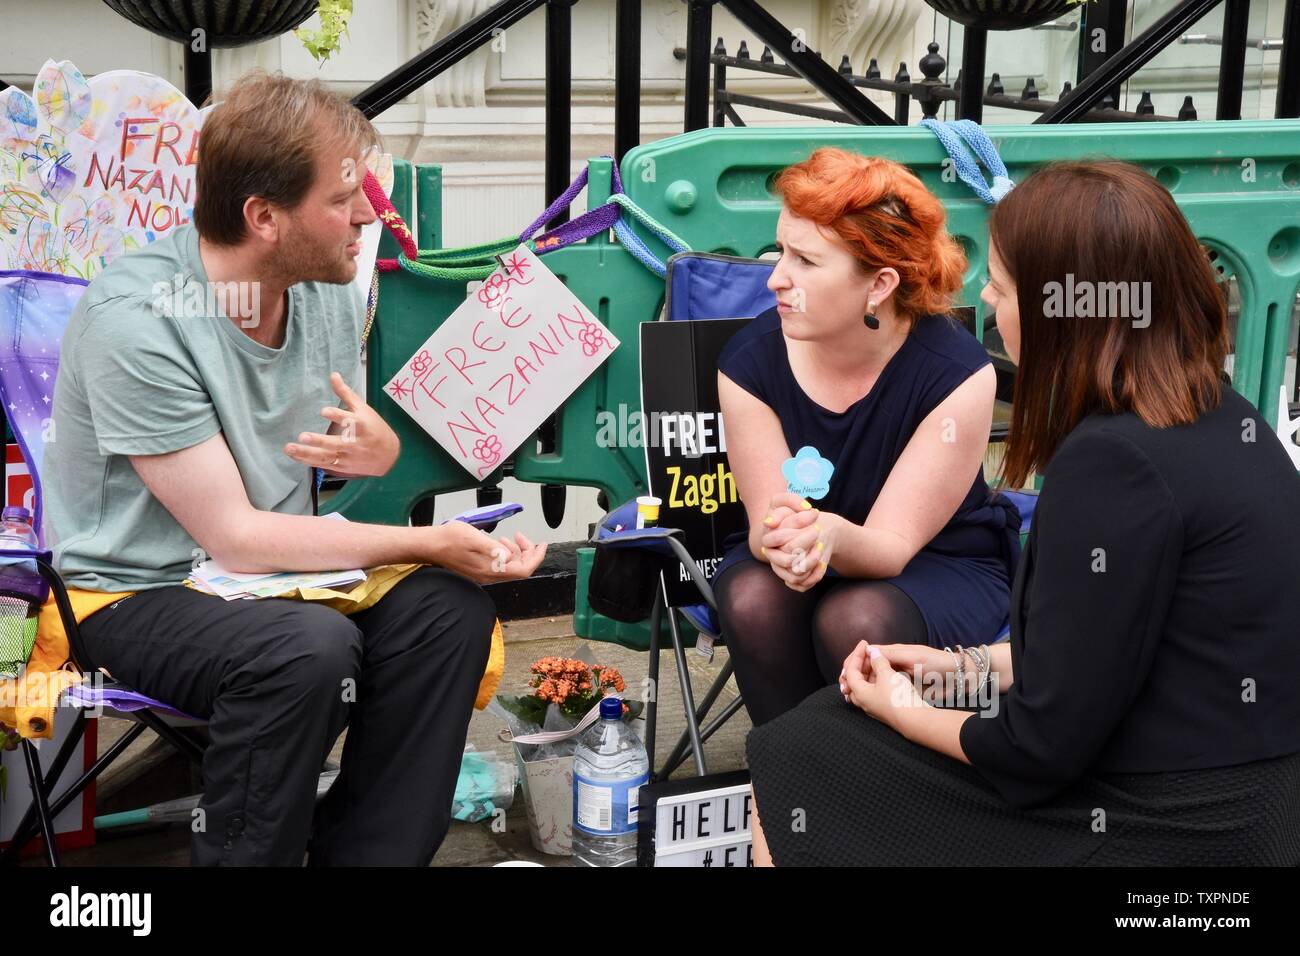 Richard Ratcliffe entretiens avec les députés du travail Louise Haigh et Stephanie paon sur onze jours de sa grève de la faim. 4 faim de justice Nazanin de protestation. L'extérieur de l'ambassade d'Iran, Londres. UK Banque D'Images